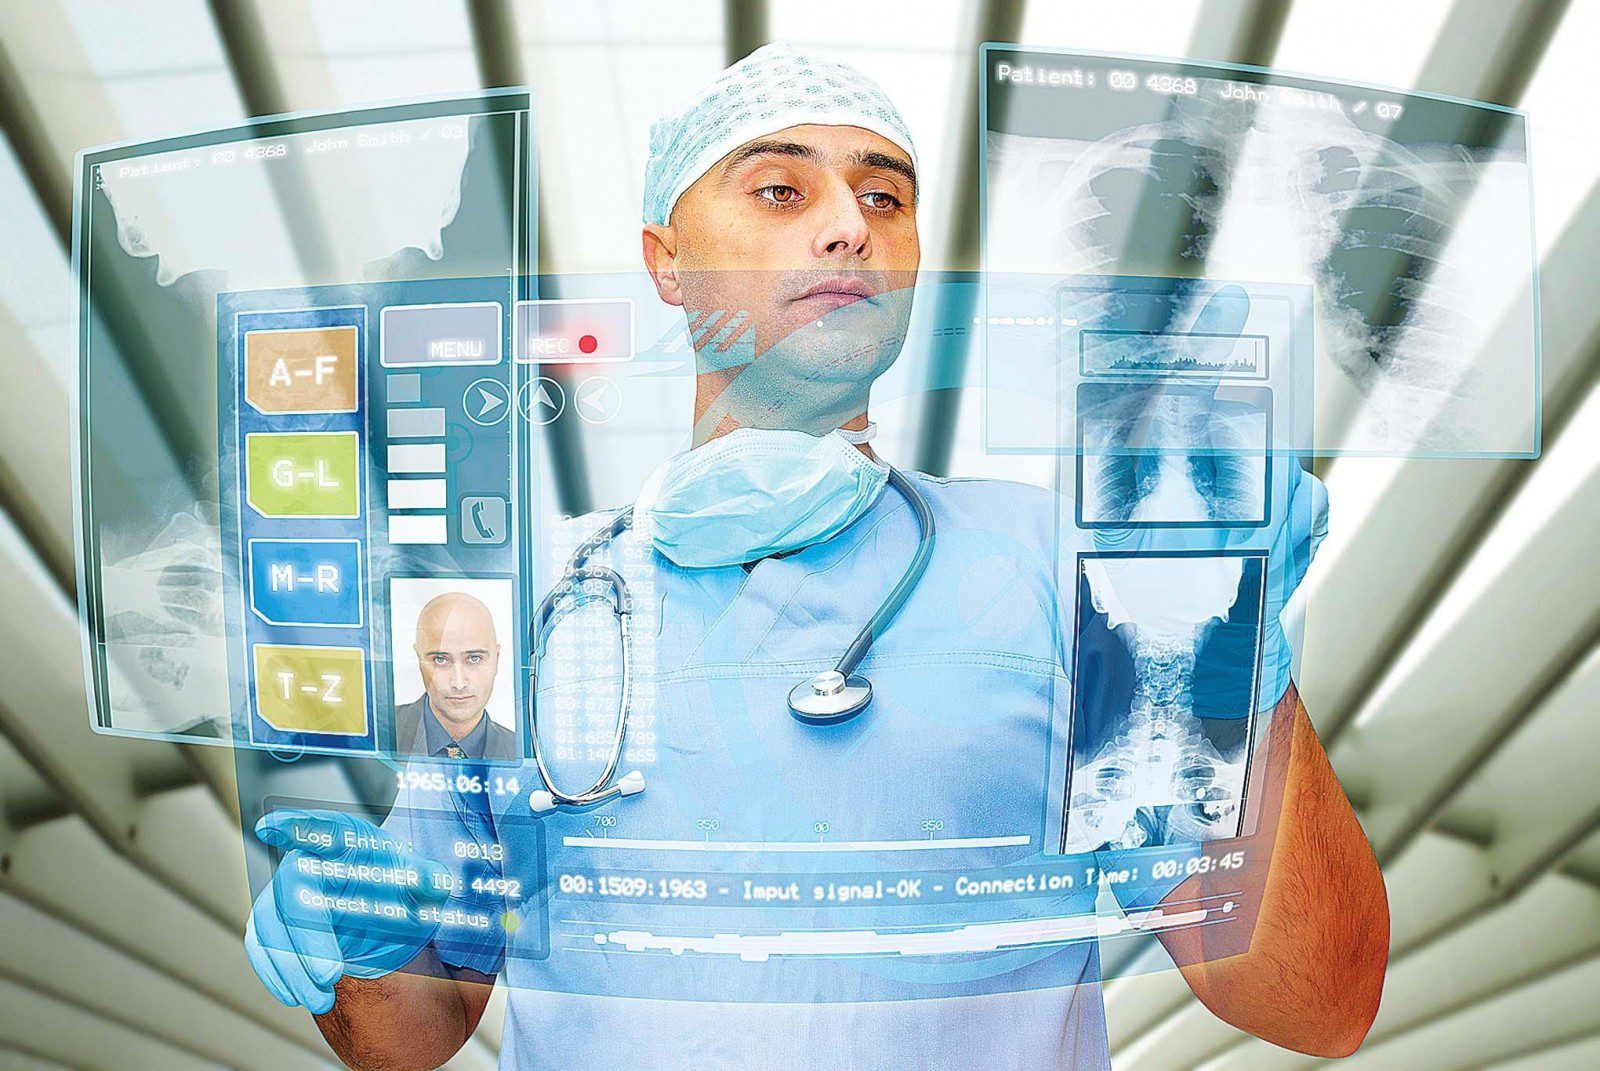 Профессии людей на здравоохранение. Медицина будущего. Мобильные технологии в медицине. Современные технологии в медицине. Инновации в медицине.